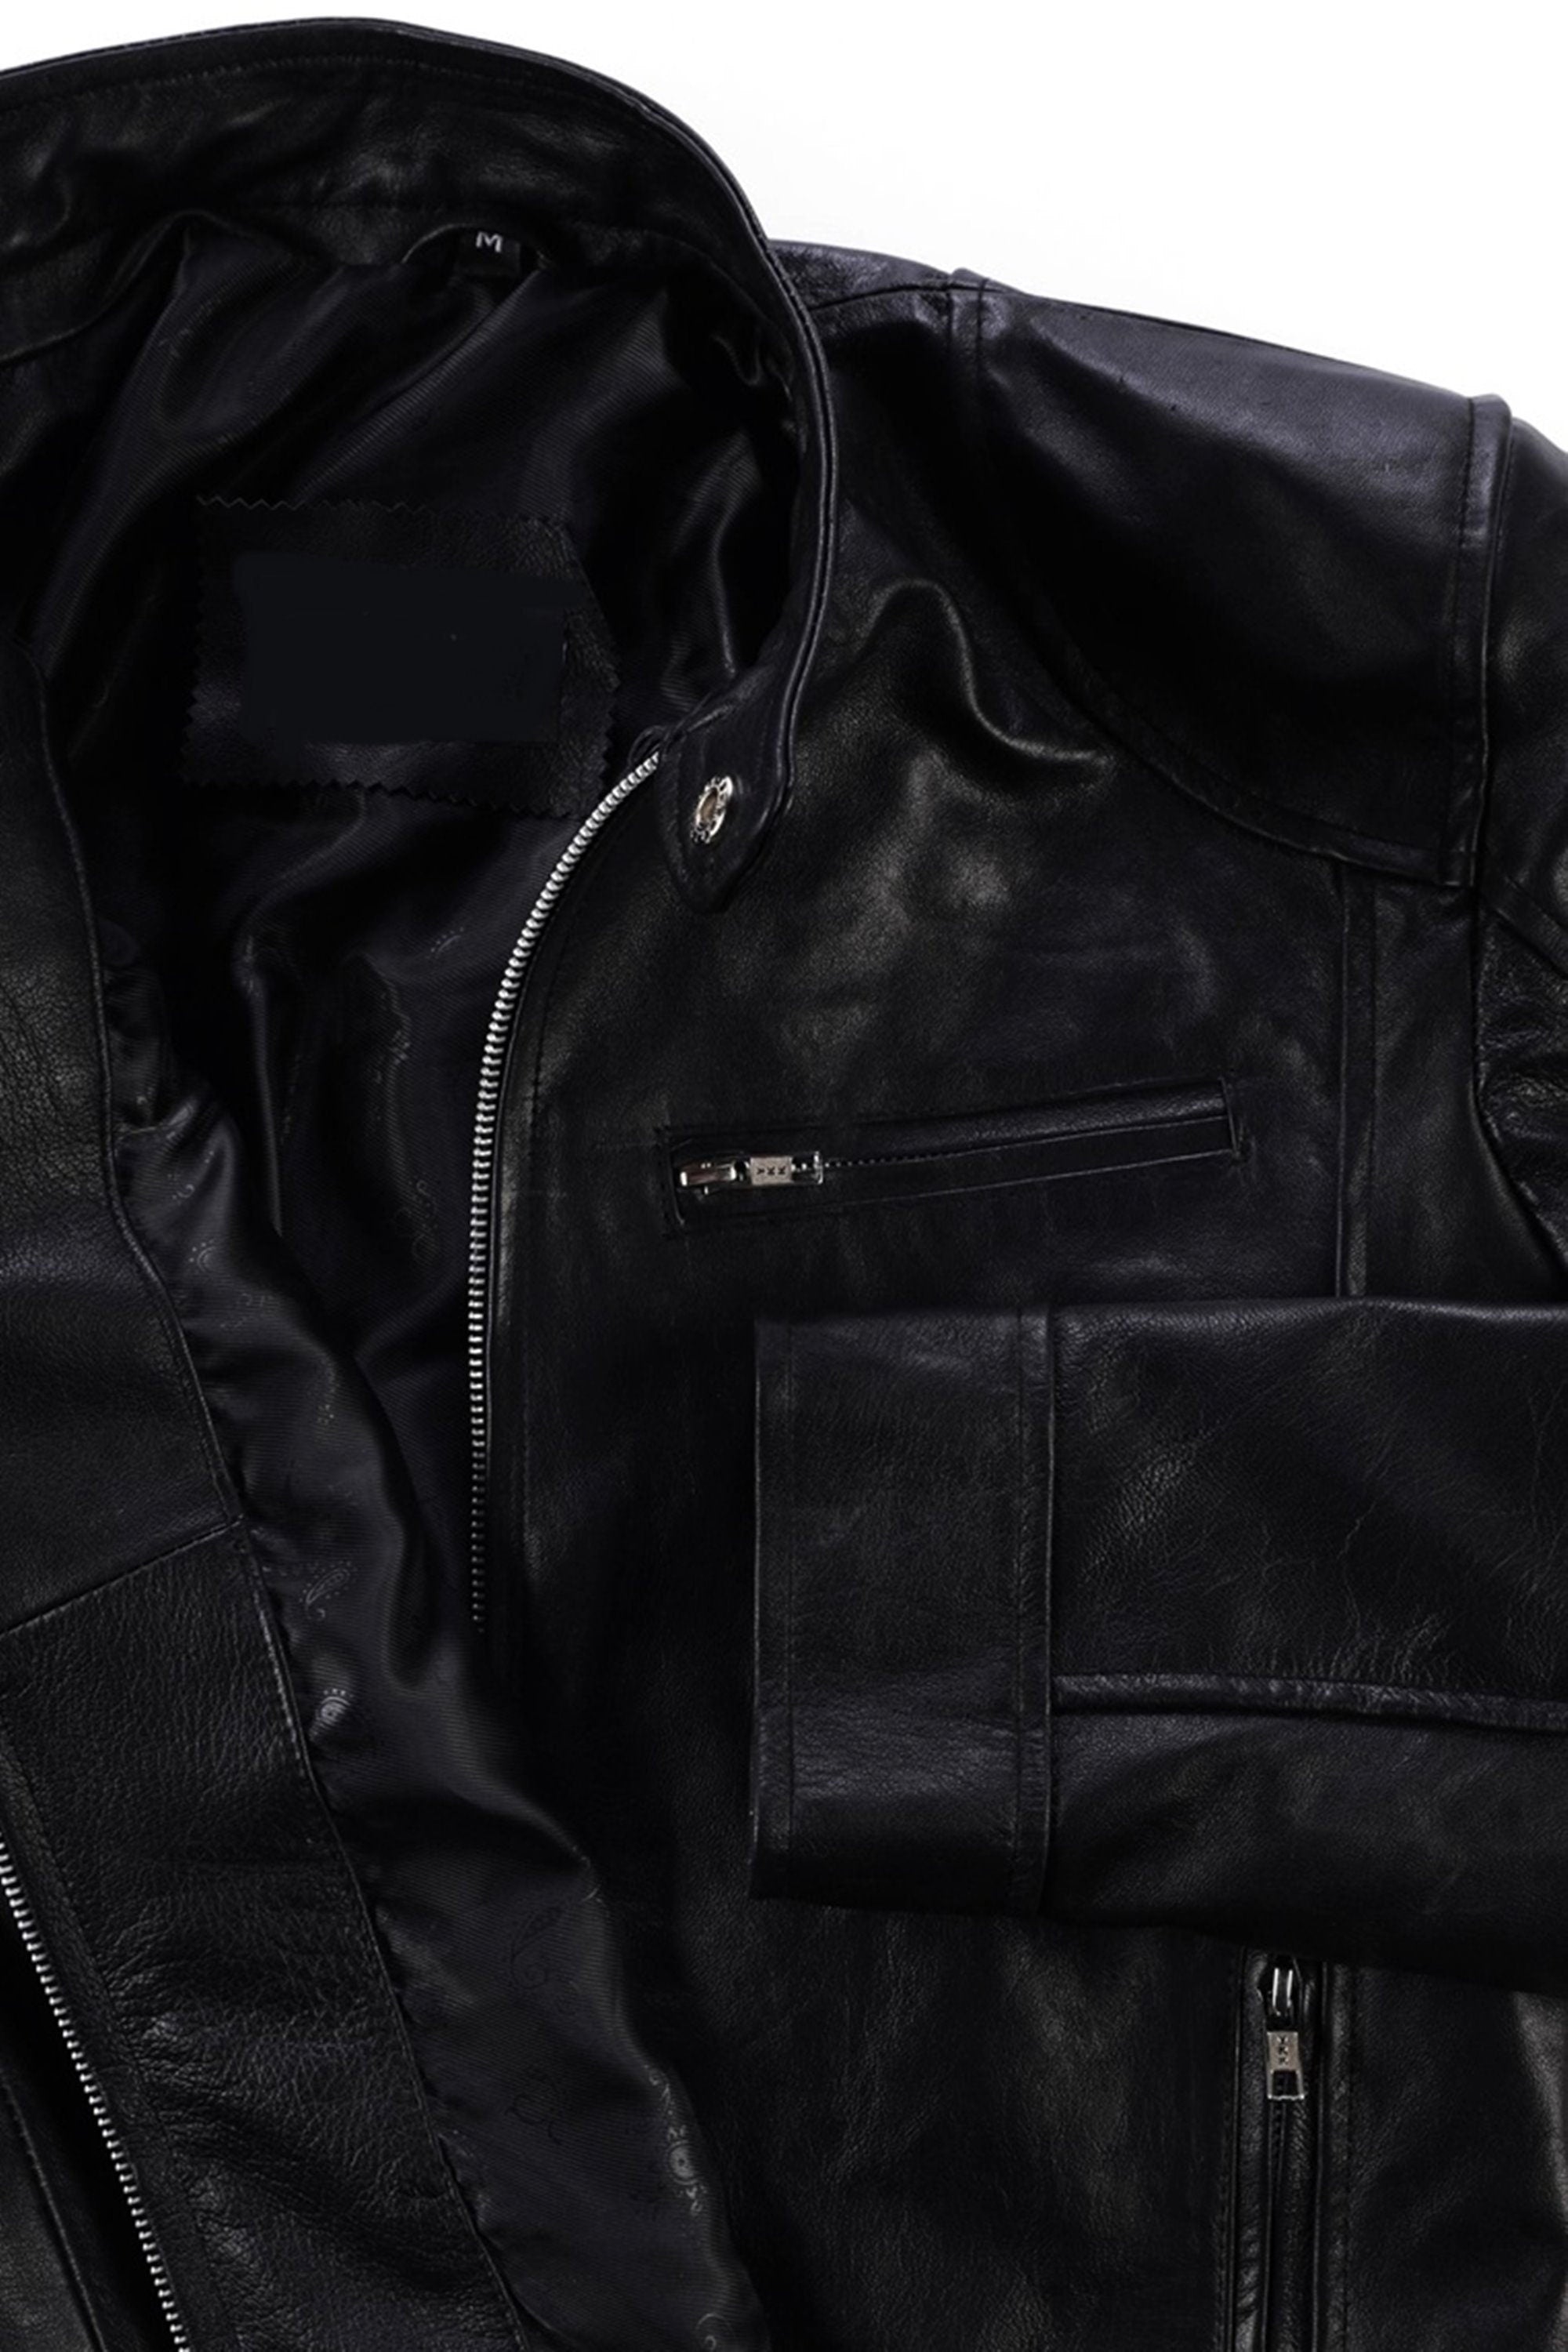 Mens Vintage Black Leather Jacket for Men